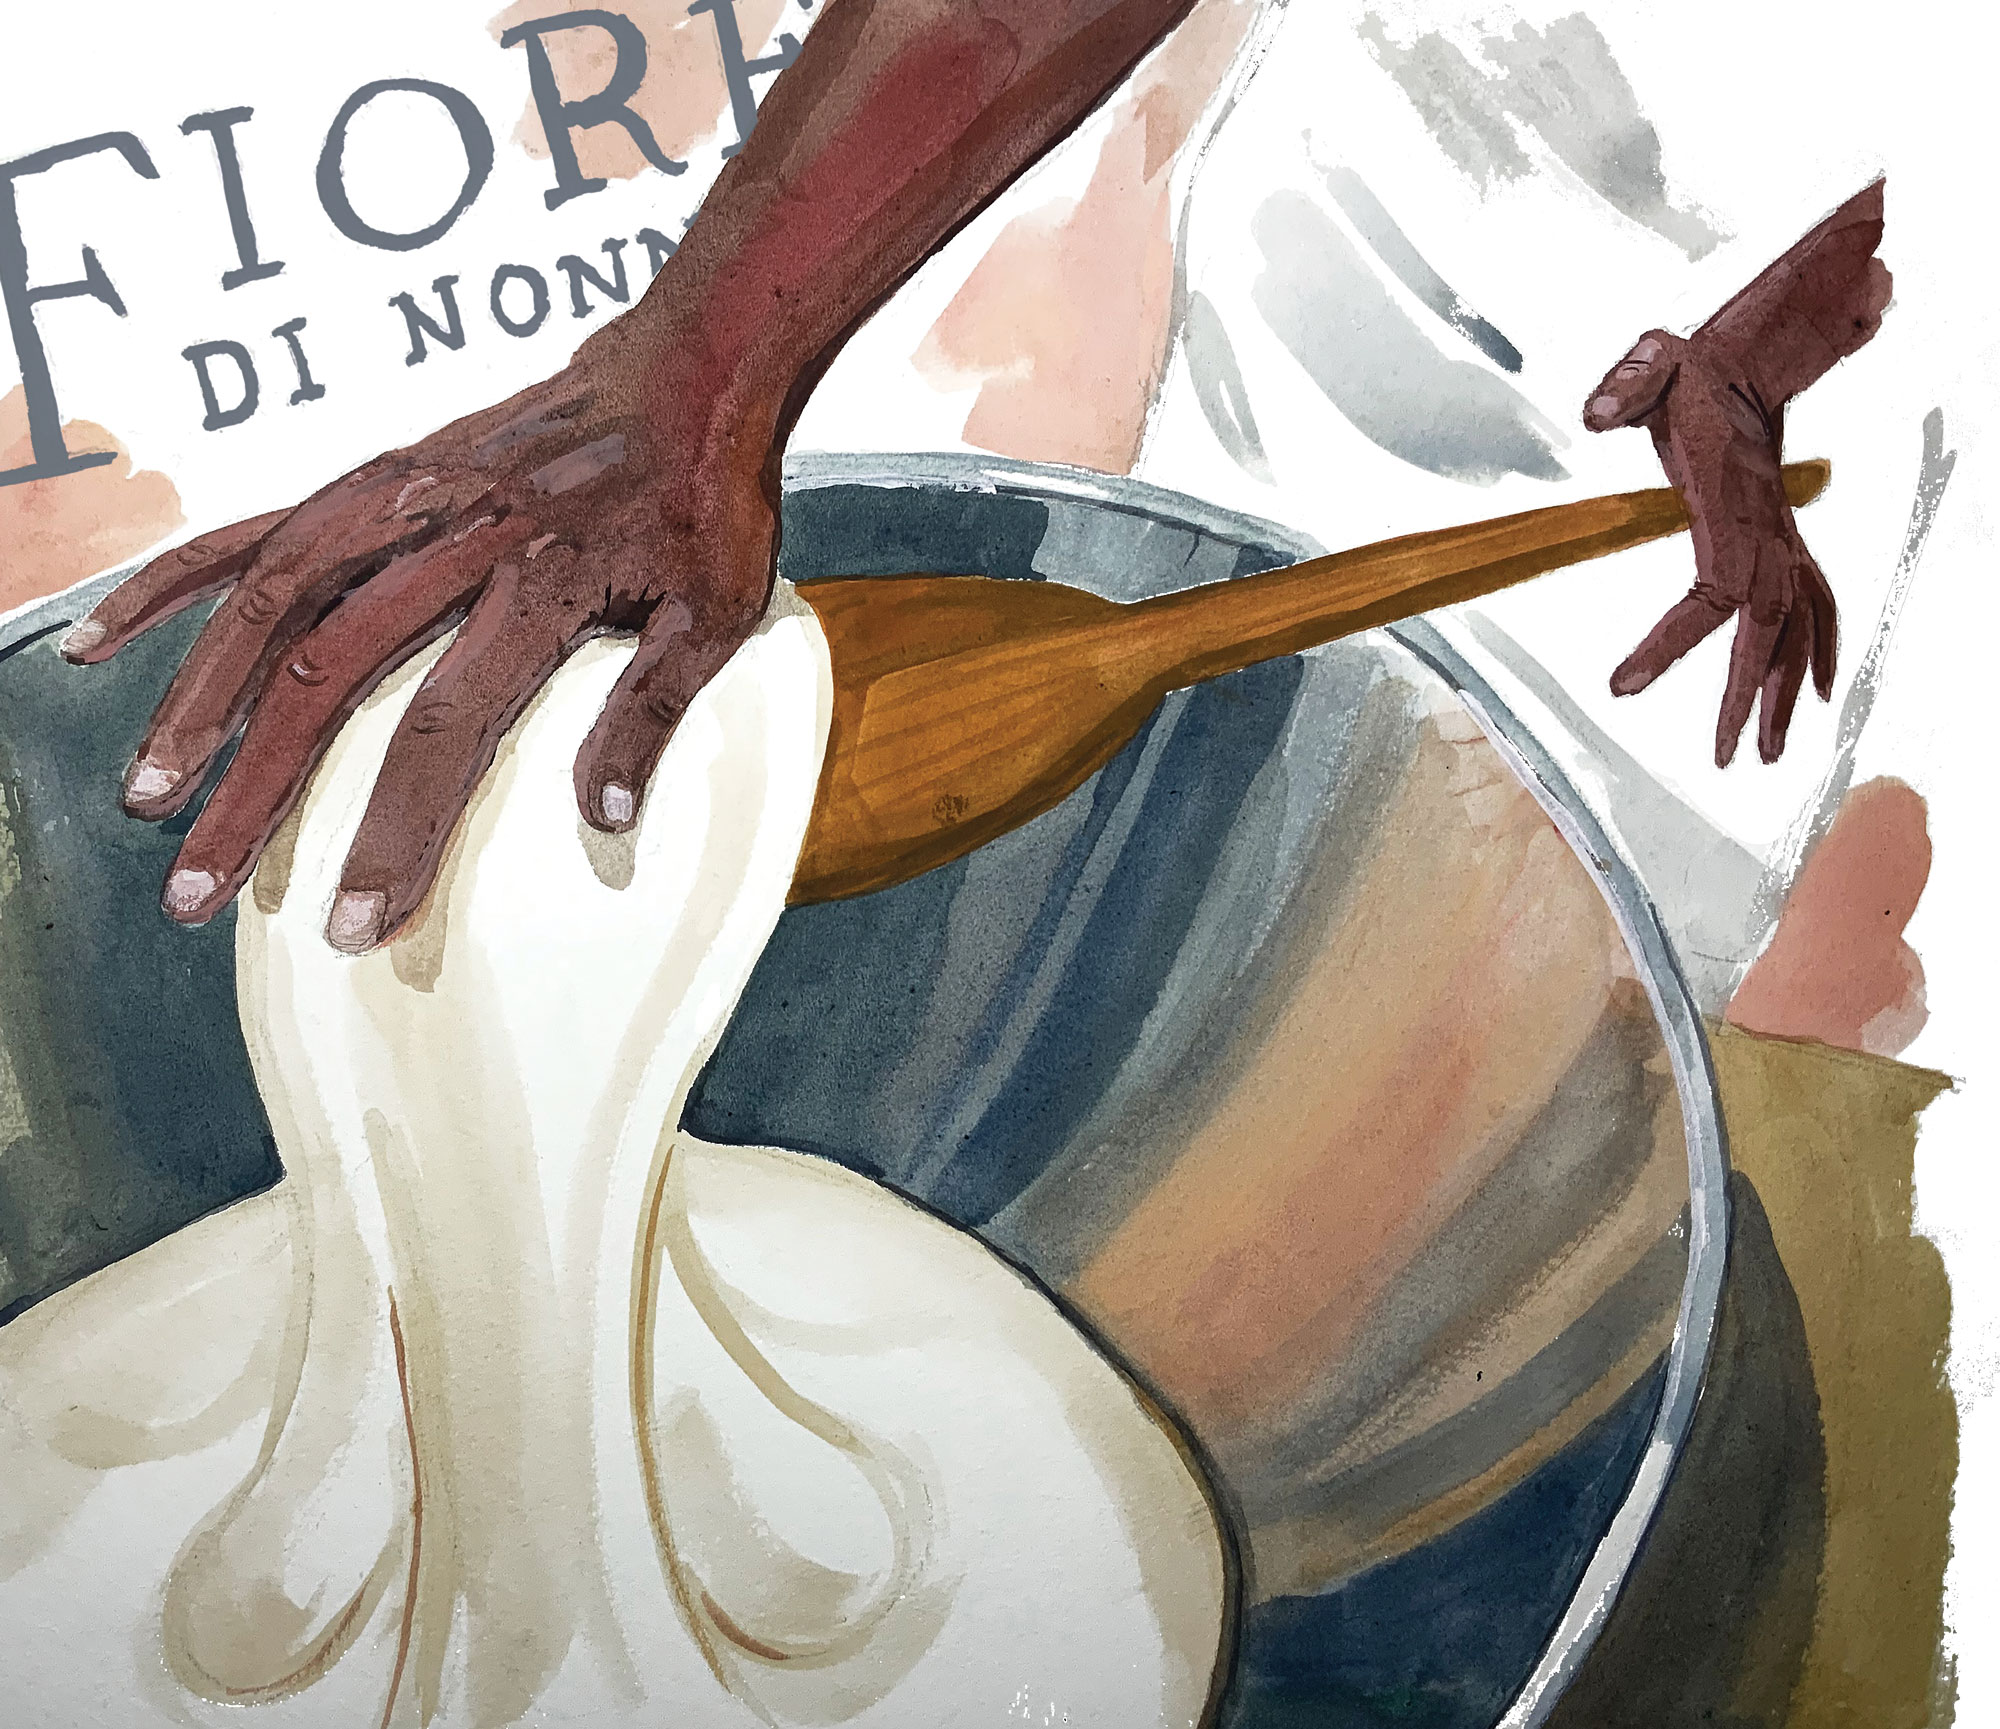 Fiore Di Nonno illustration by Dan Bransfield